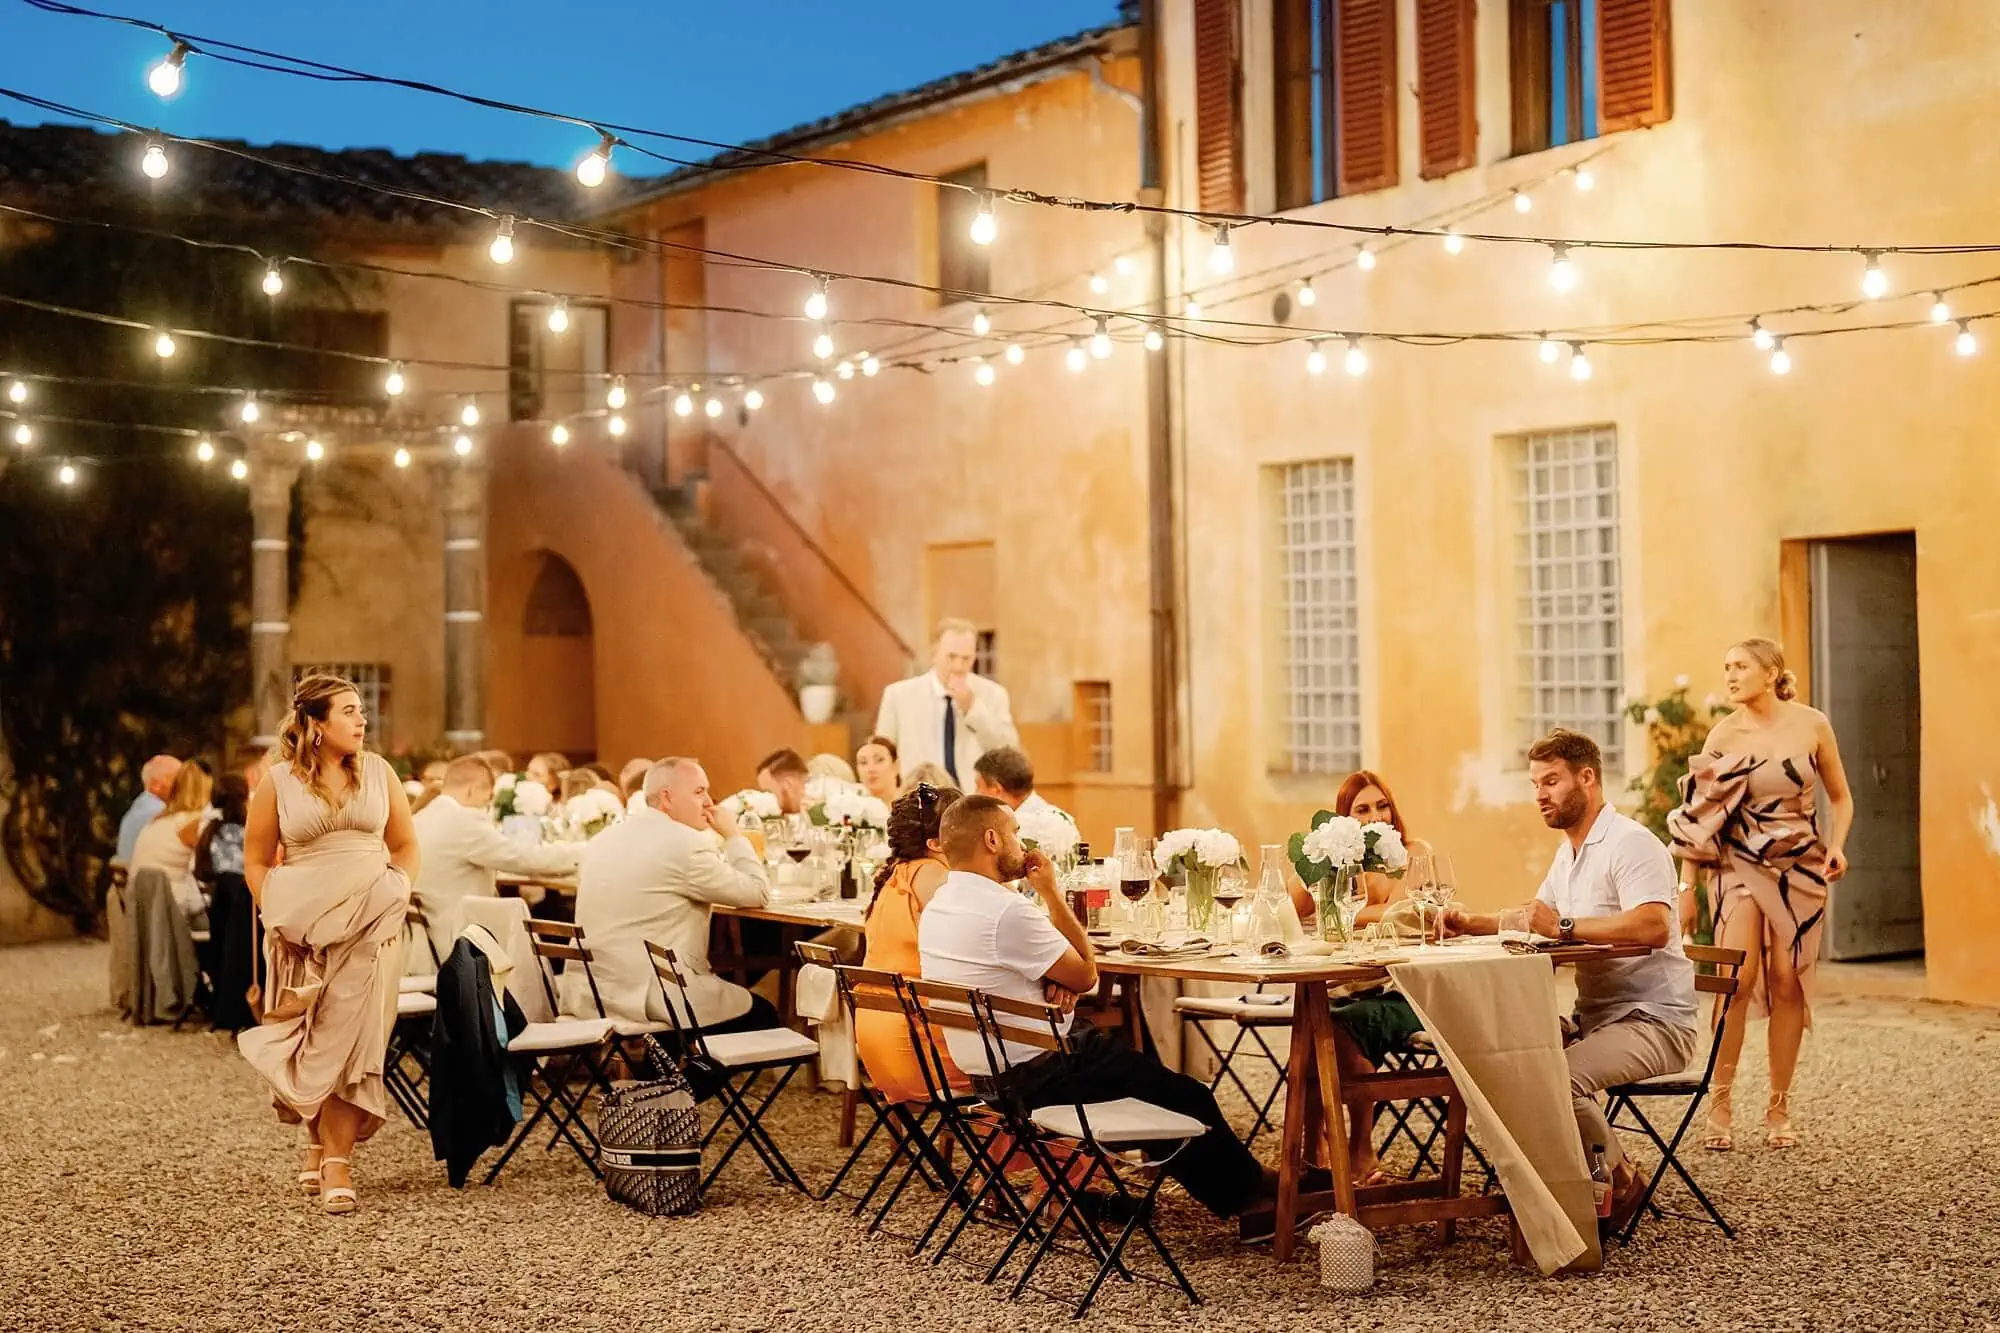 Guests eating at Villa Catignano